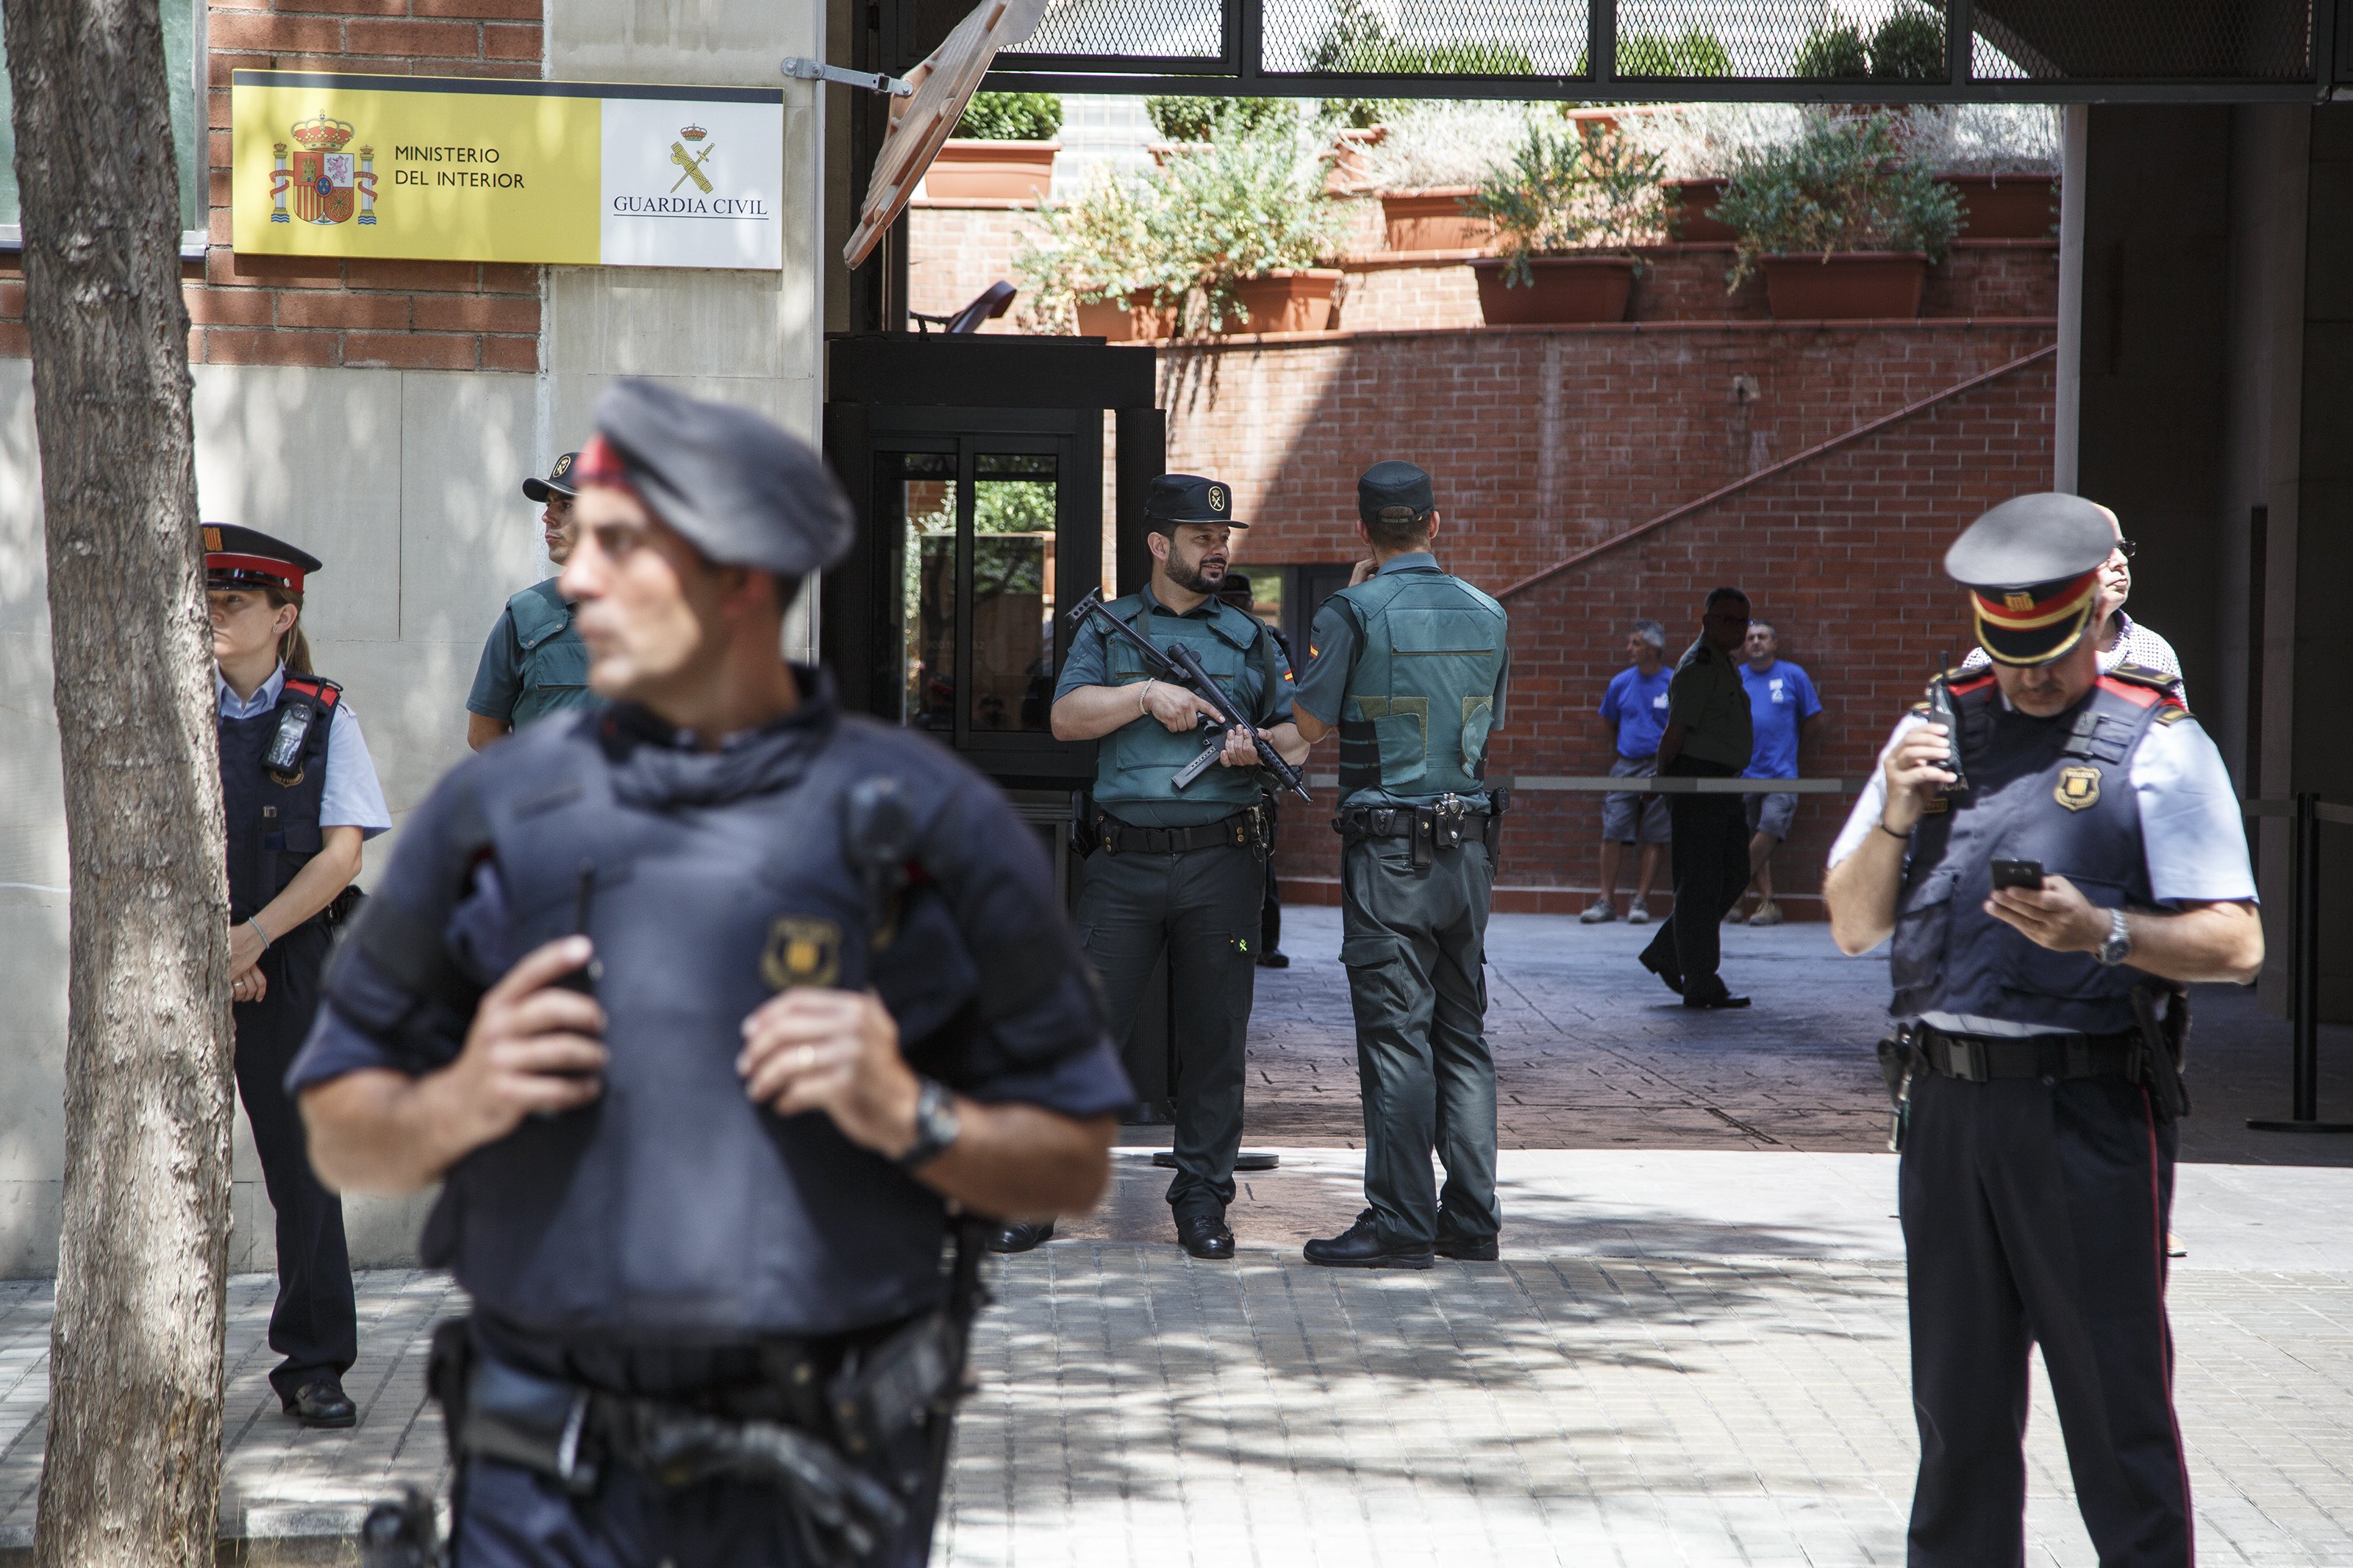 La asociación Unión de Guardias Civiles pide que se condecore el mosso que mató a 4 yihadistas